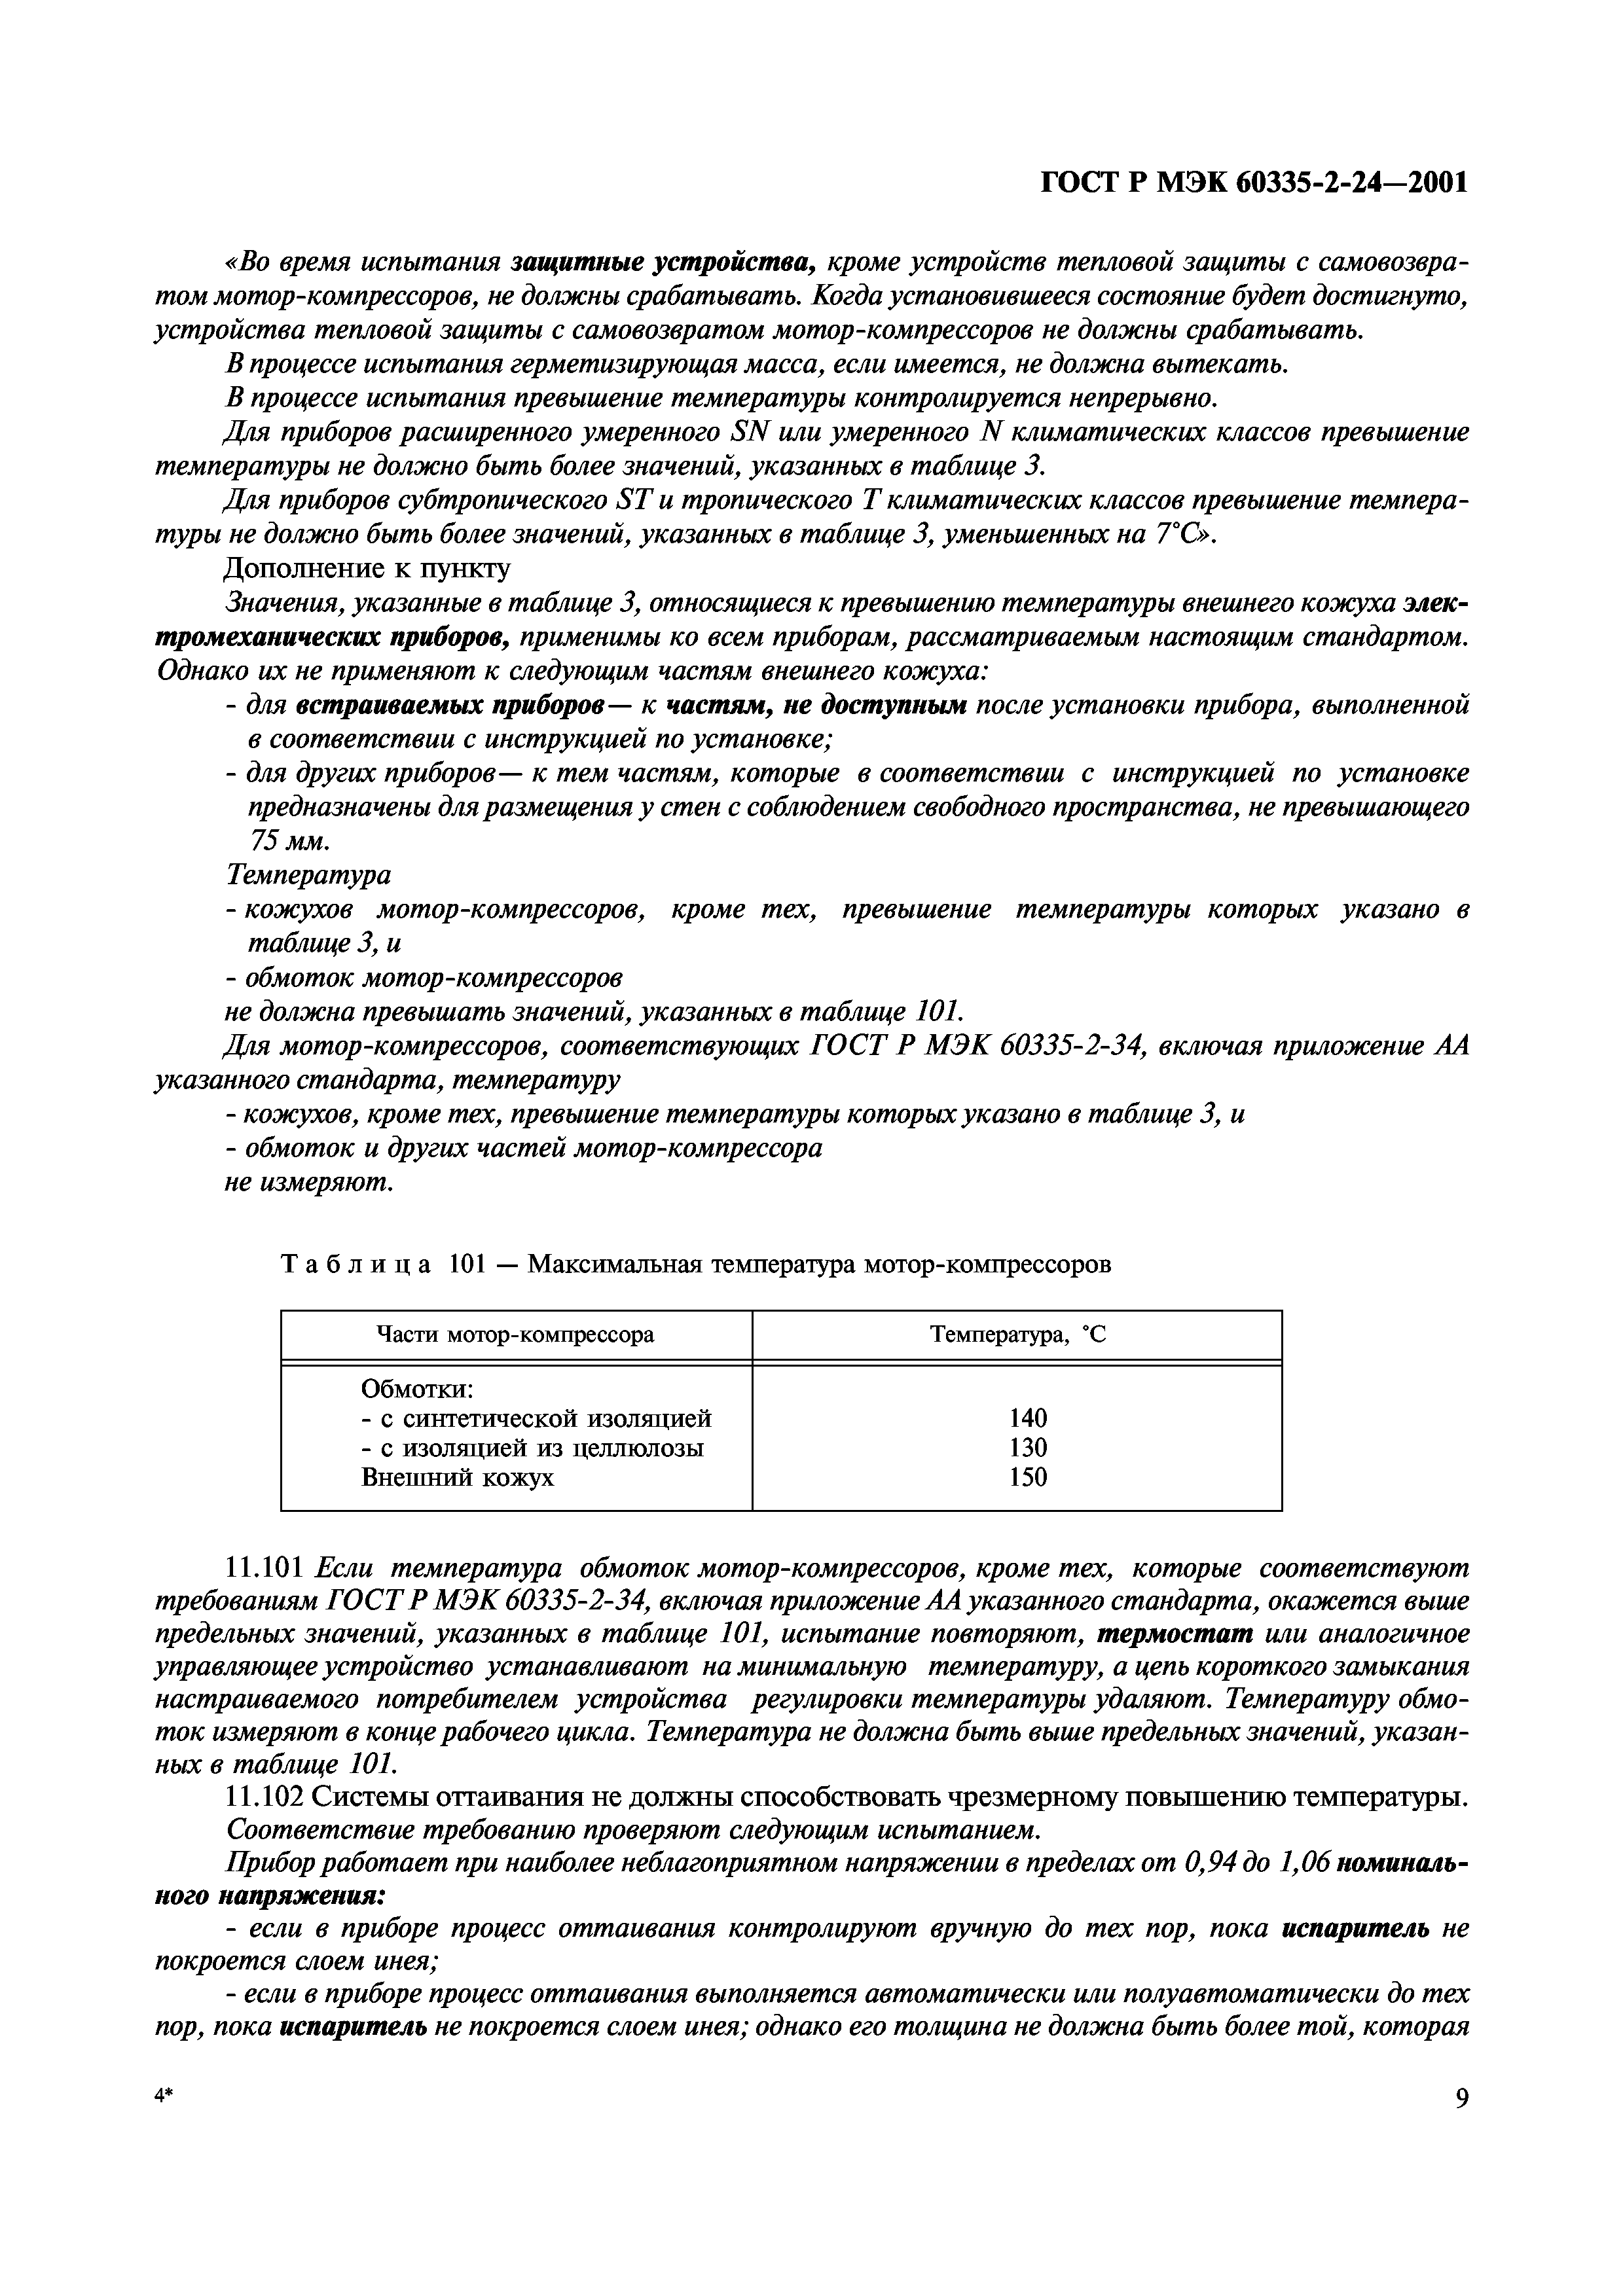 ГОСТ Р МЭК 60335-2-24-2001